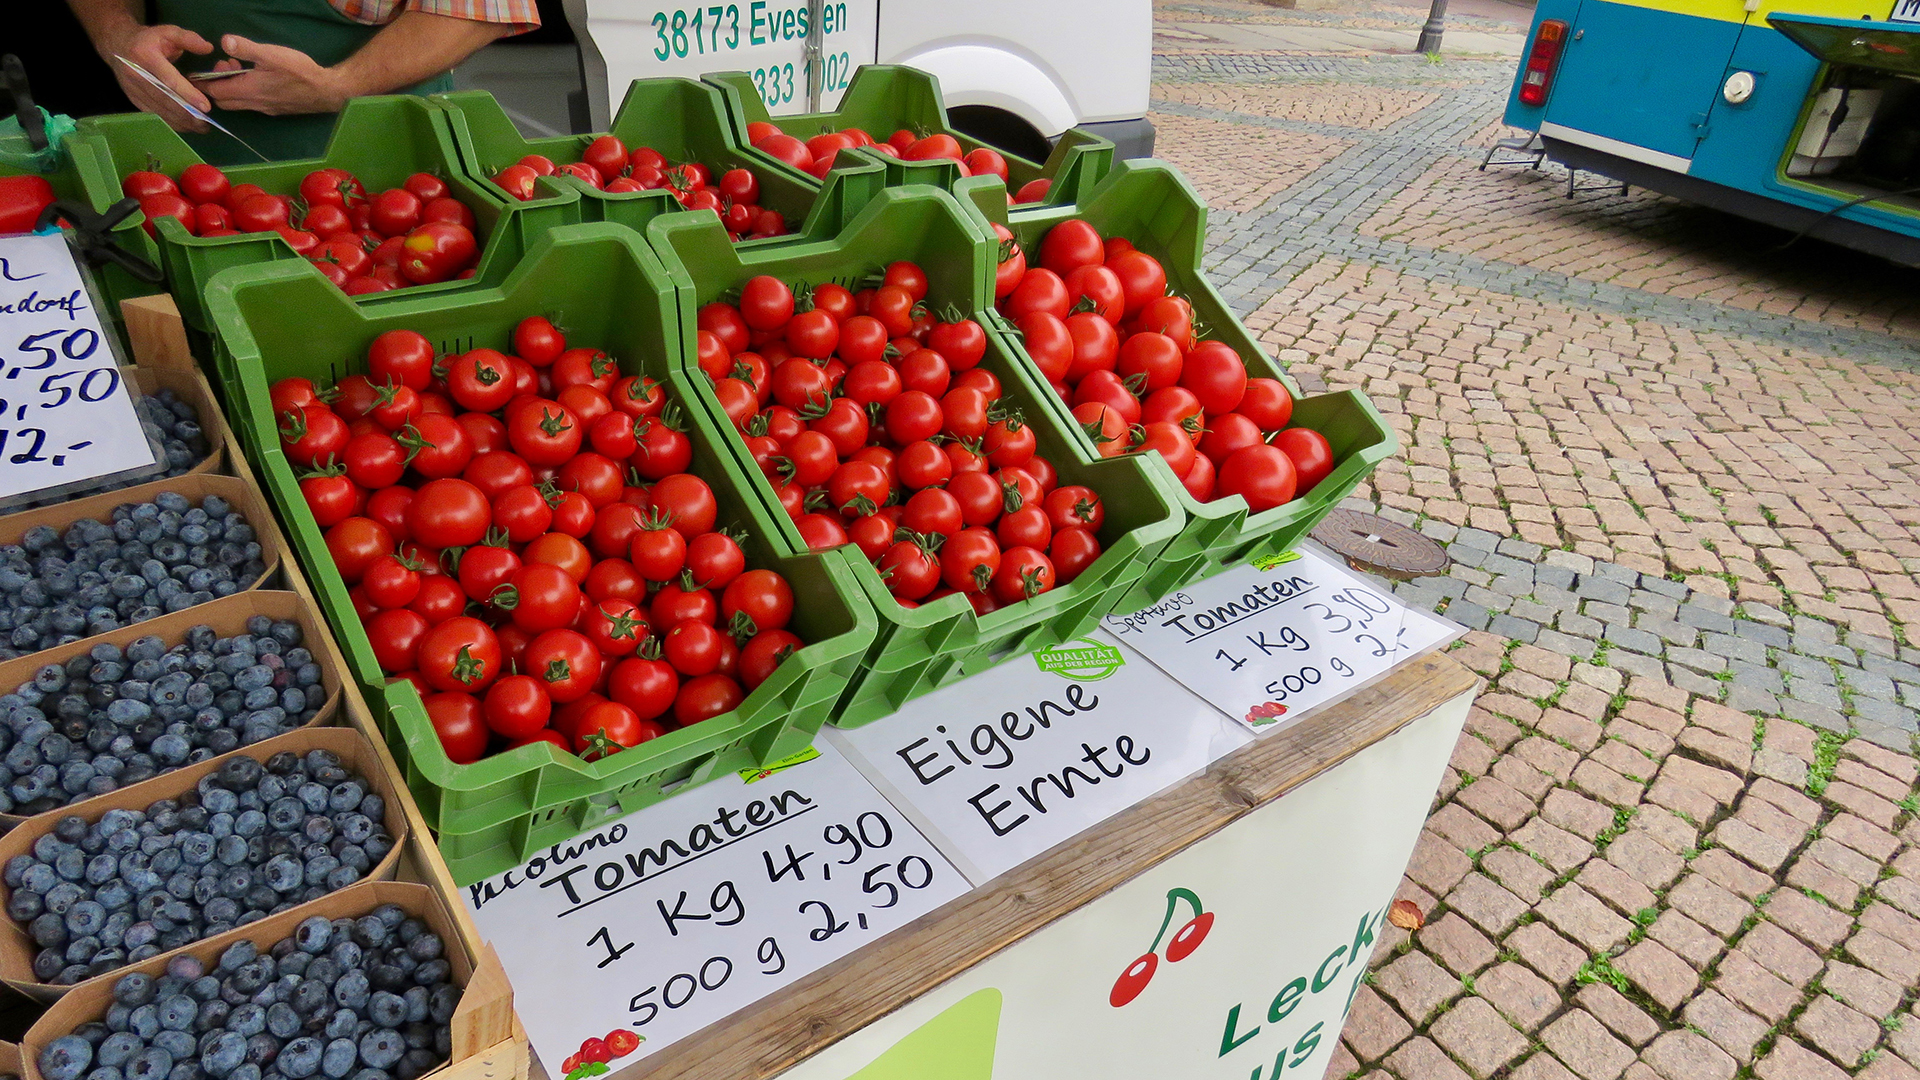 Im Mittelpunkt des Bildes stehen sechs grüne Kisten an einem Marktstand, die mit Tomaten gefüllt sind. Auf einem Schild darunter steht "Picolino Tomaten. Ein Kilogramm 4,79 Euro." Ein weiteres Schild trägt den Schriftzug "Eigene Ernte". Auf einem dritten Schild steht ebenfalls eine unleserliche Sorte "Tomaten. Ein Kilogramm 3,90 Euro. 500 Gramm 2 Euro".